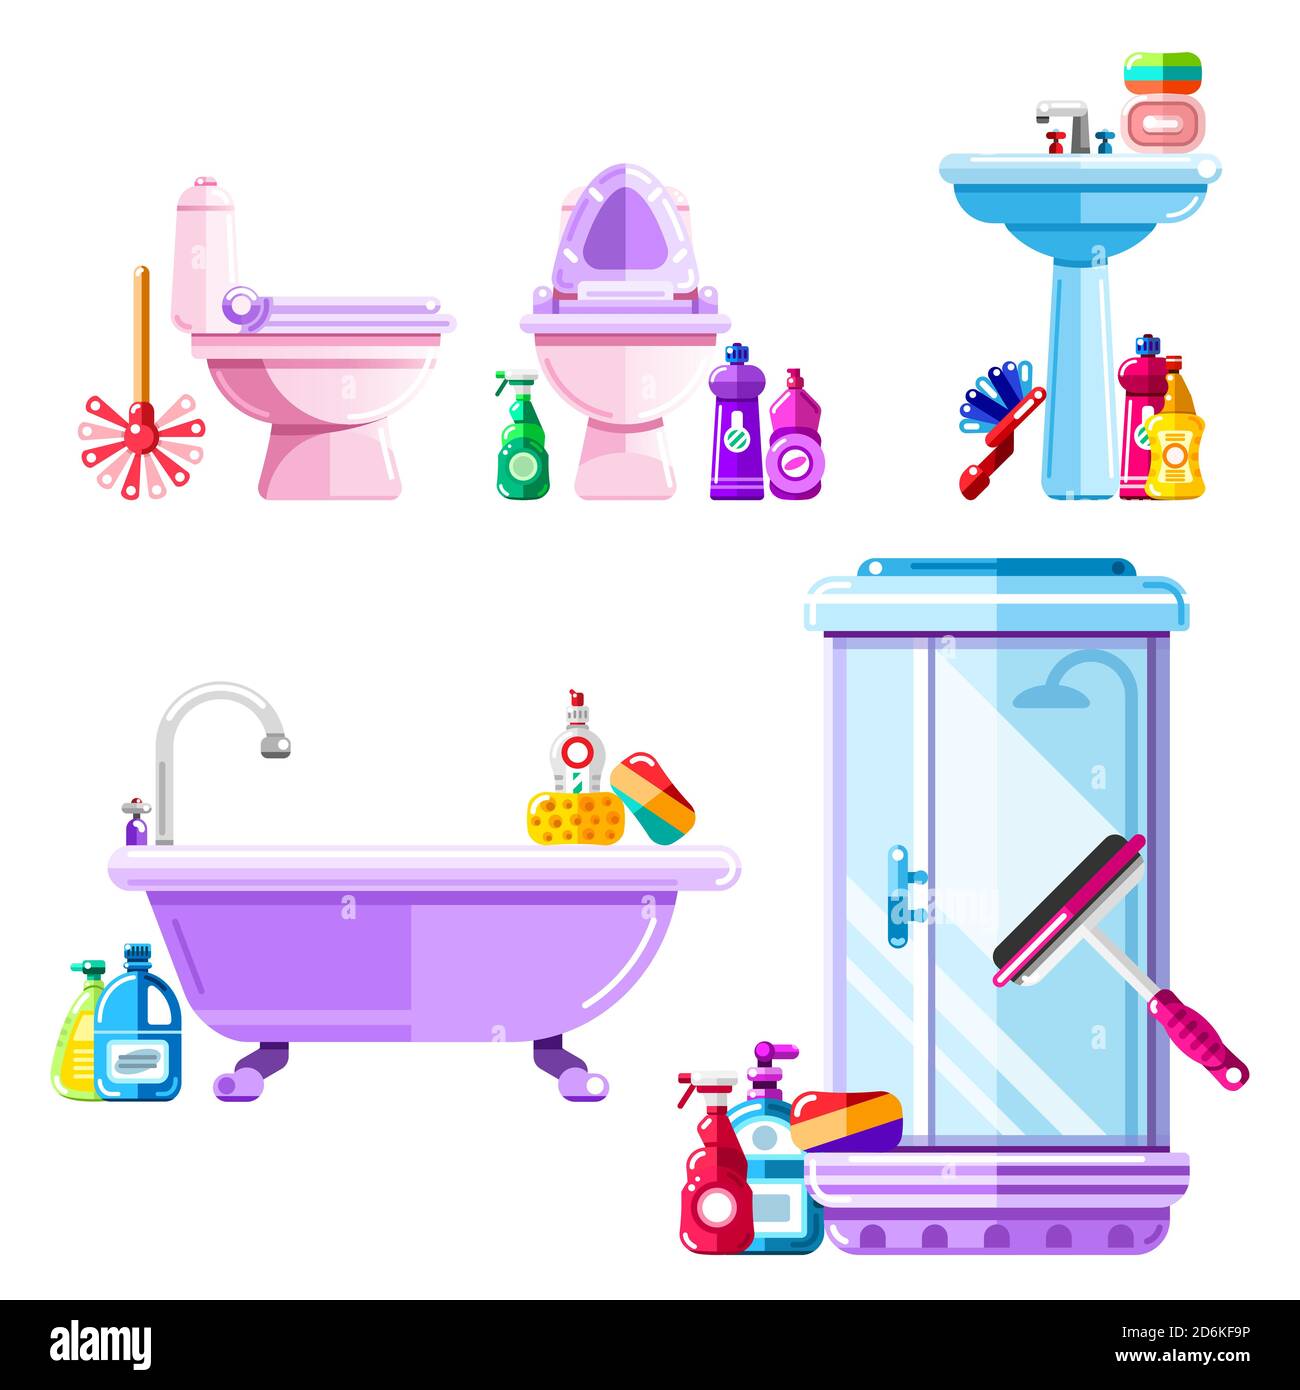 Badezimmer und sanitäre Technik Reinigung. Vektor-isolierte Symbole gesetzt. Flache Abbildung von Duschkabine, Waschbecken, Toilette, Reinigungsmitteln und Waschmitteln. Stock Vektor